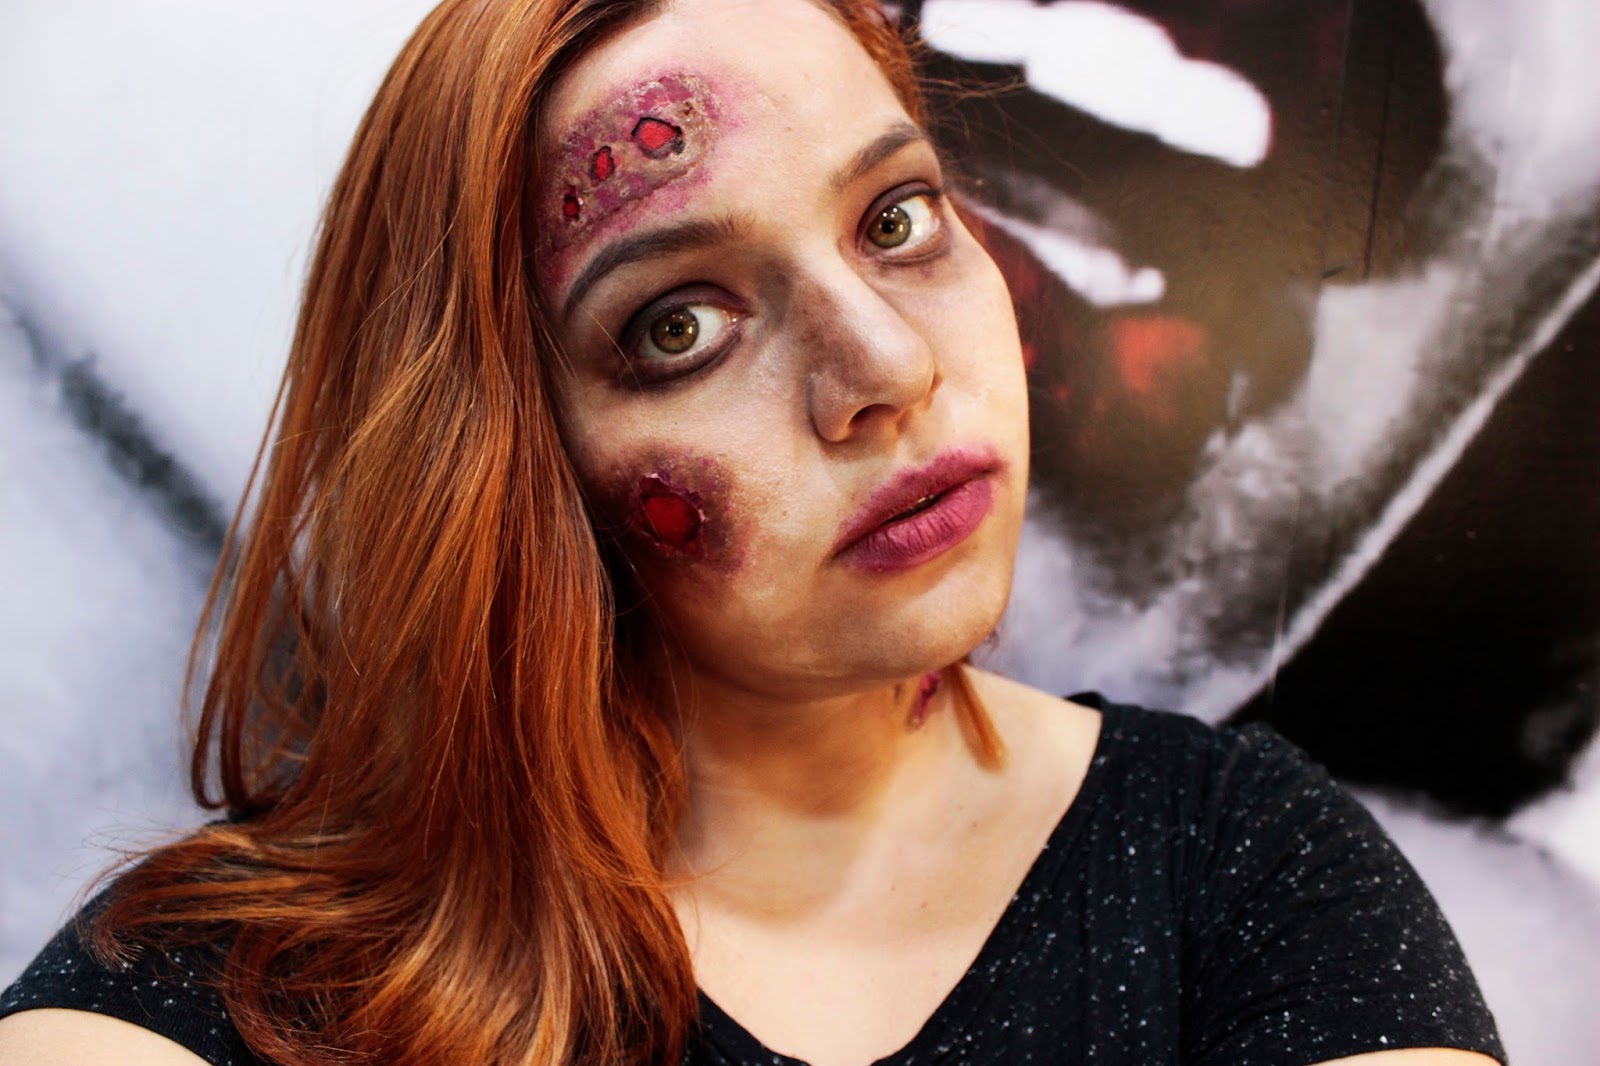 Médicos confundem maquiagem de Halloween com ataque zumbi - Mega Curioso